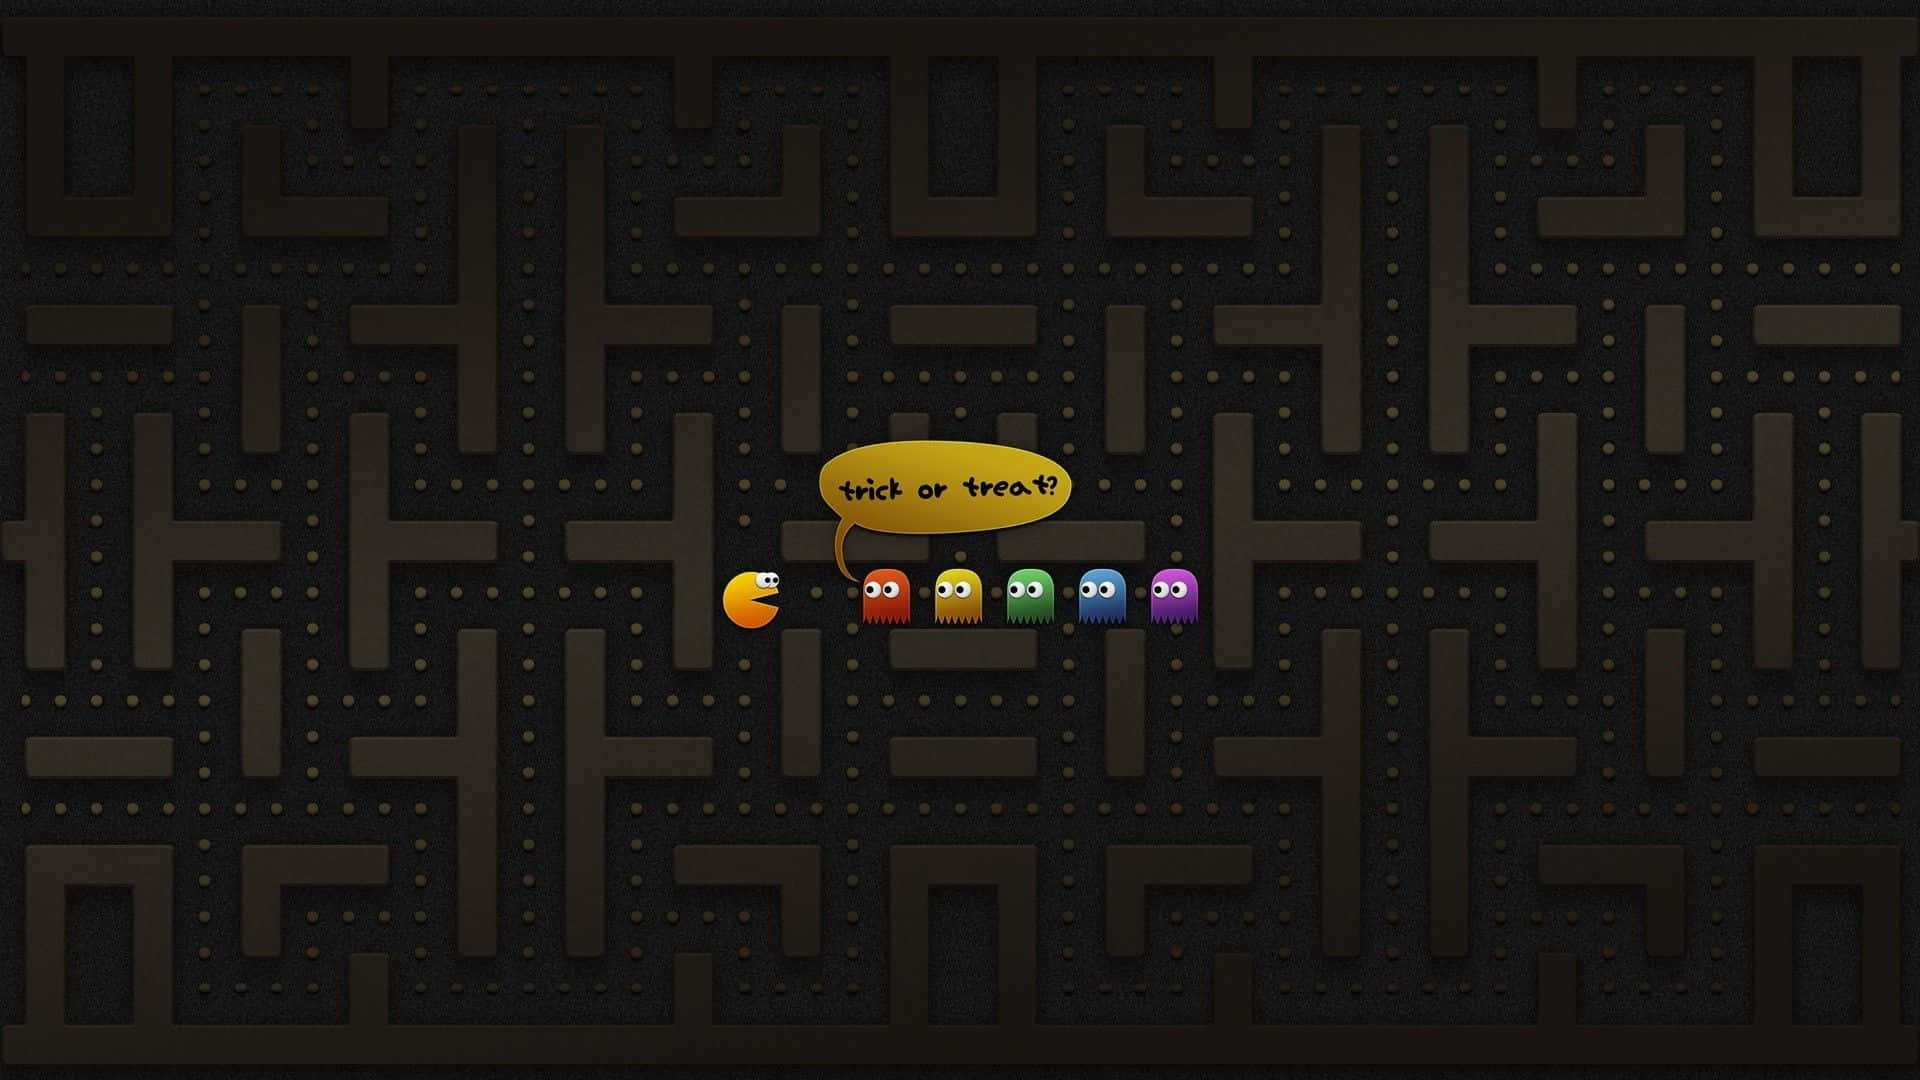 Einhelles Und Farbenfrohes Level Von Pacman!